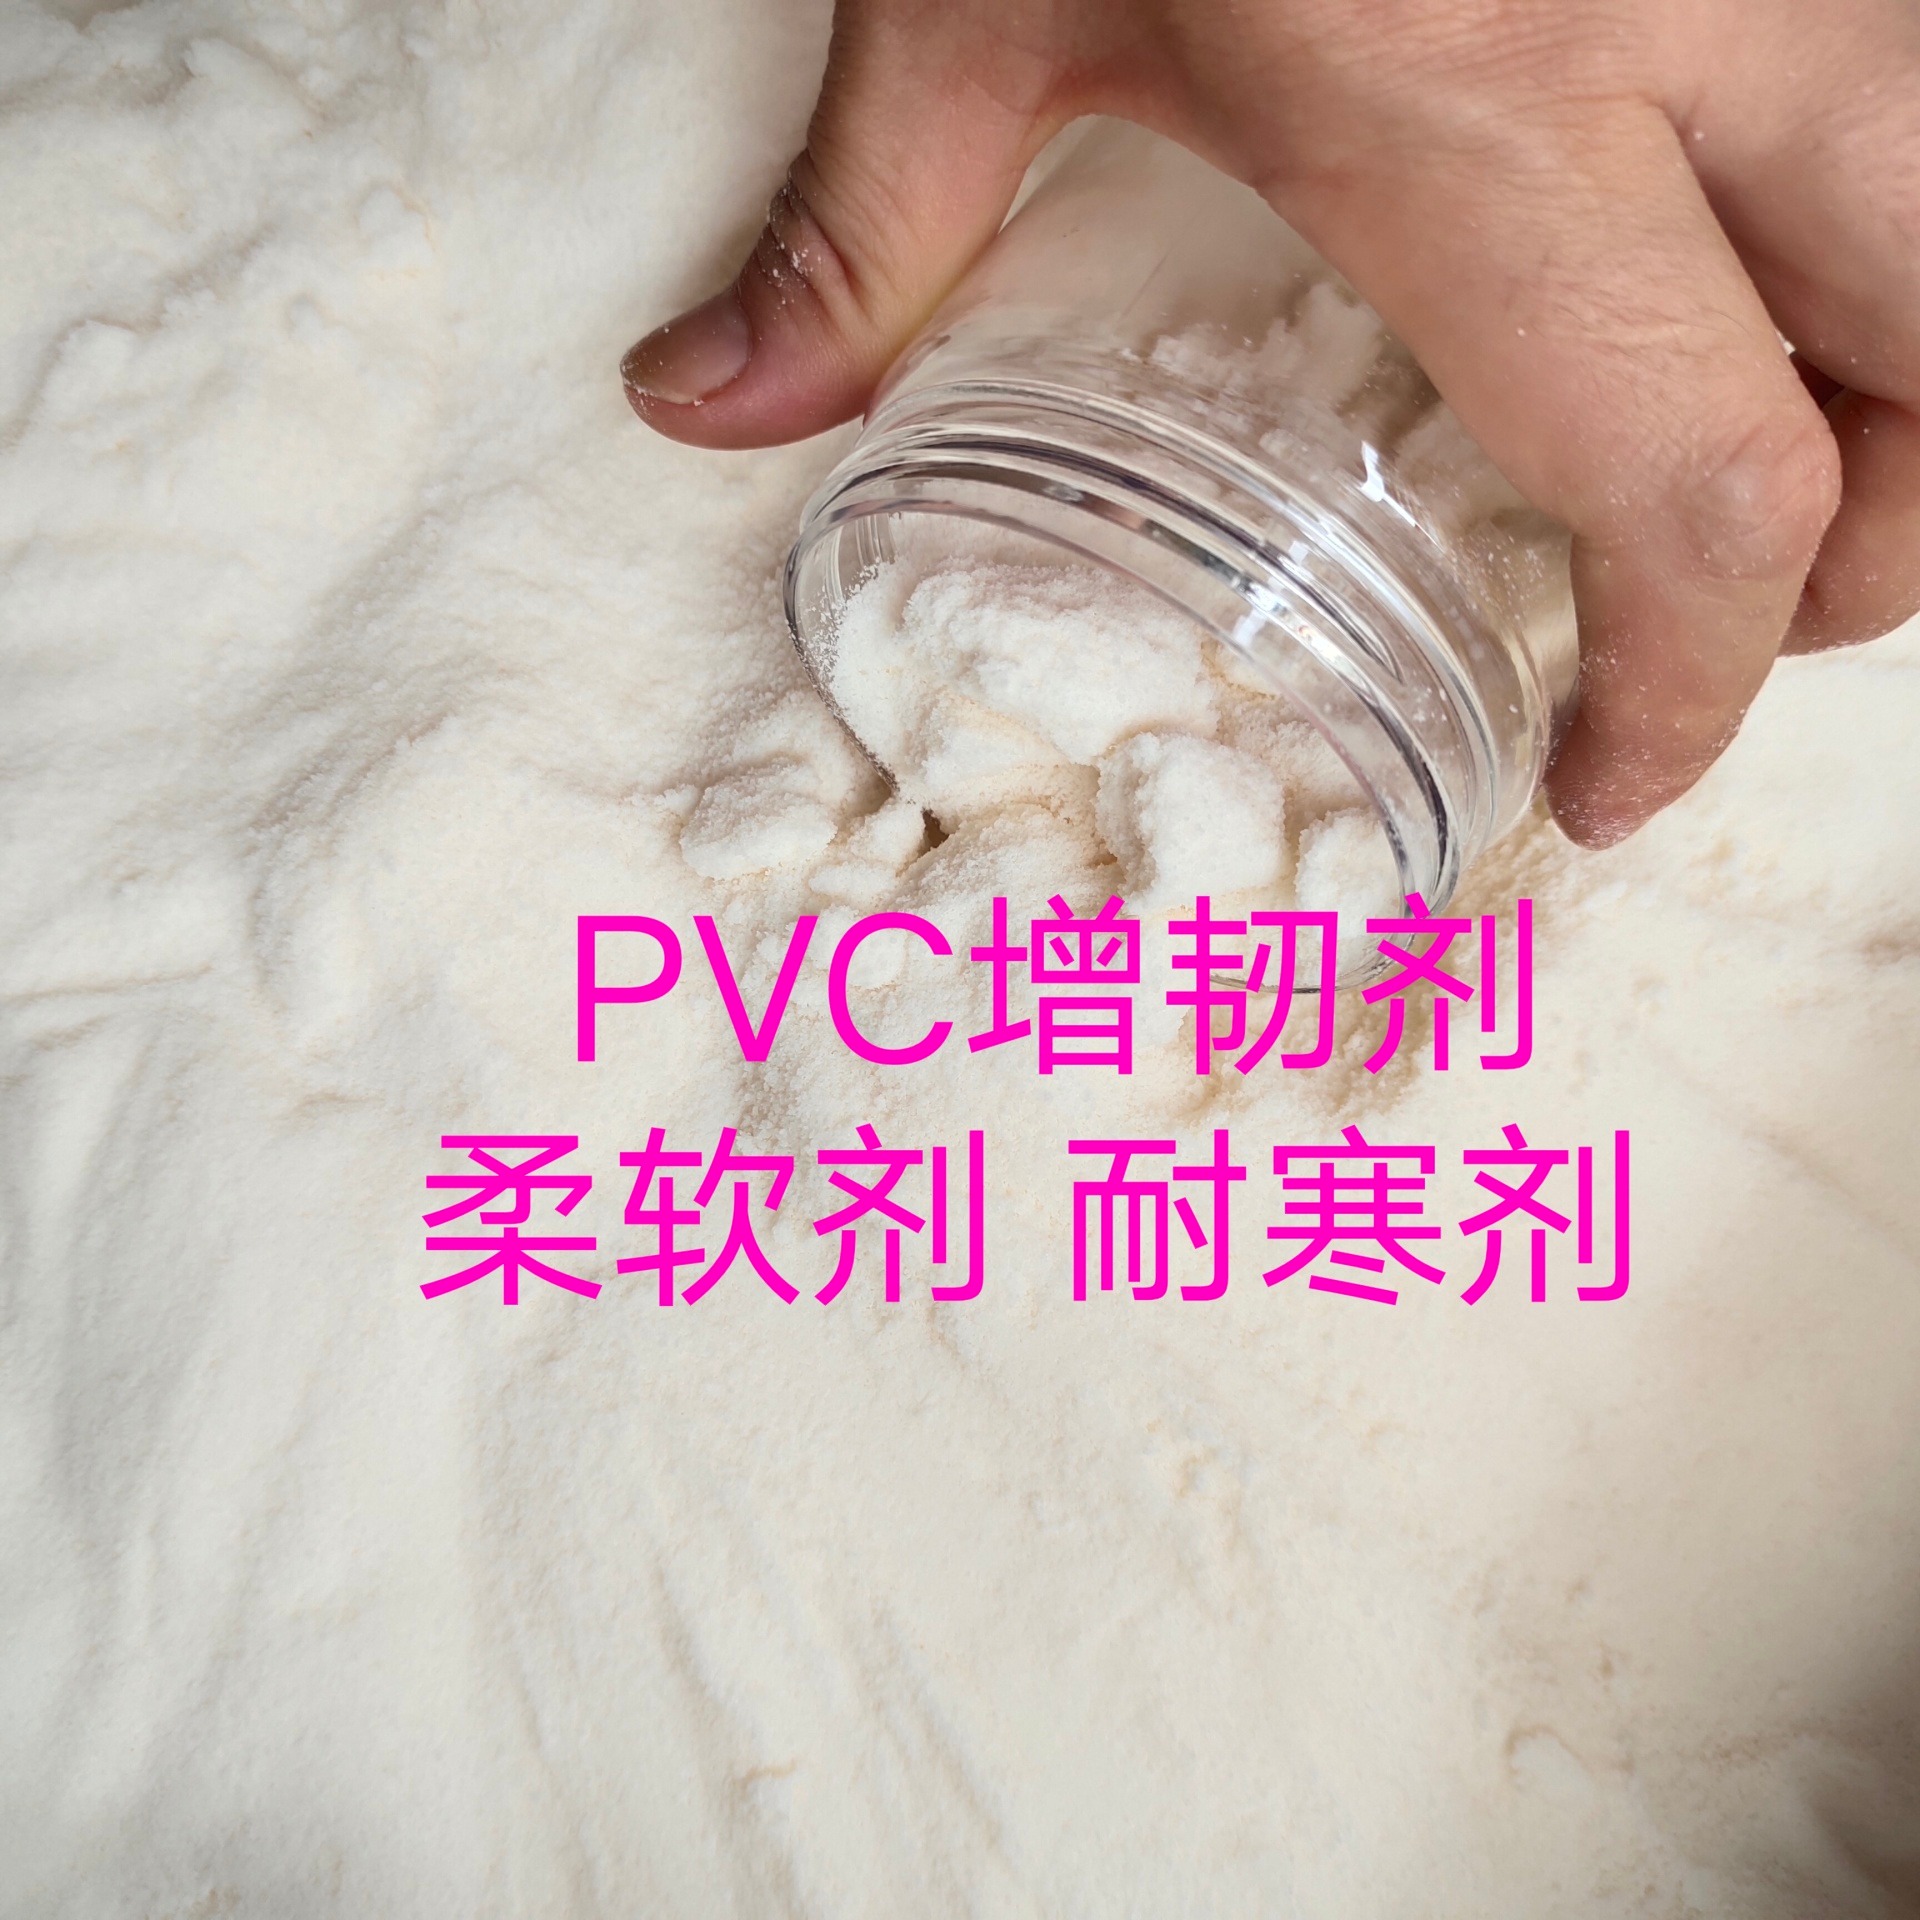 PVC发泡鞋底韧性差    丁腈橡胶粉末  提高PVC韧性   增加弹力  耐寒效果好   透明度好图片